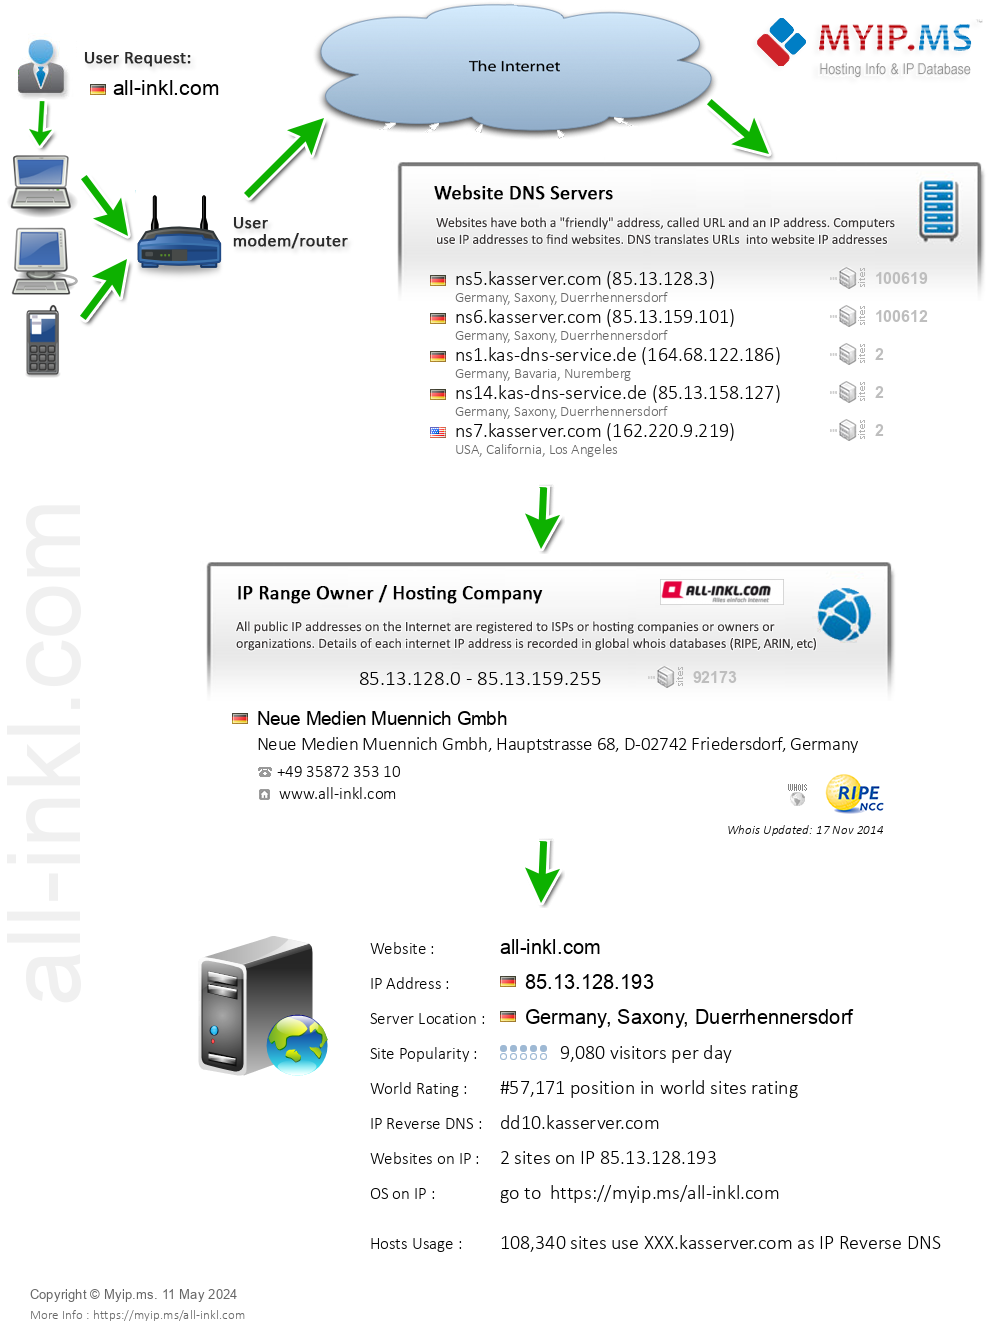 All-inkl.com - Website Hosting Visual IP Diagram